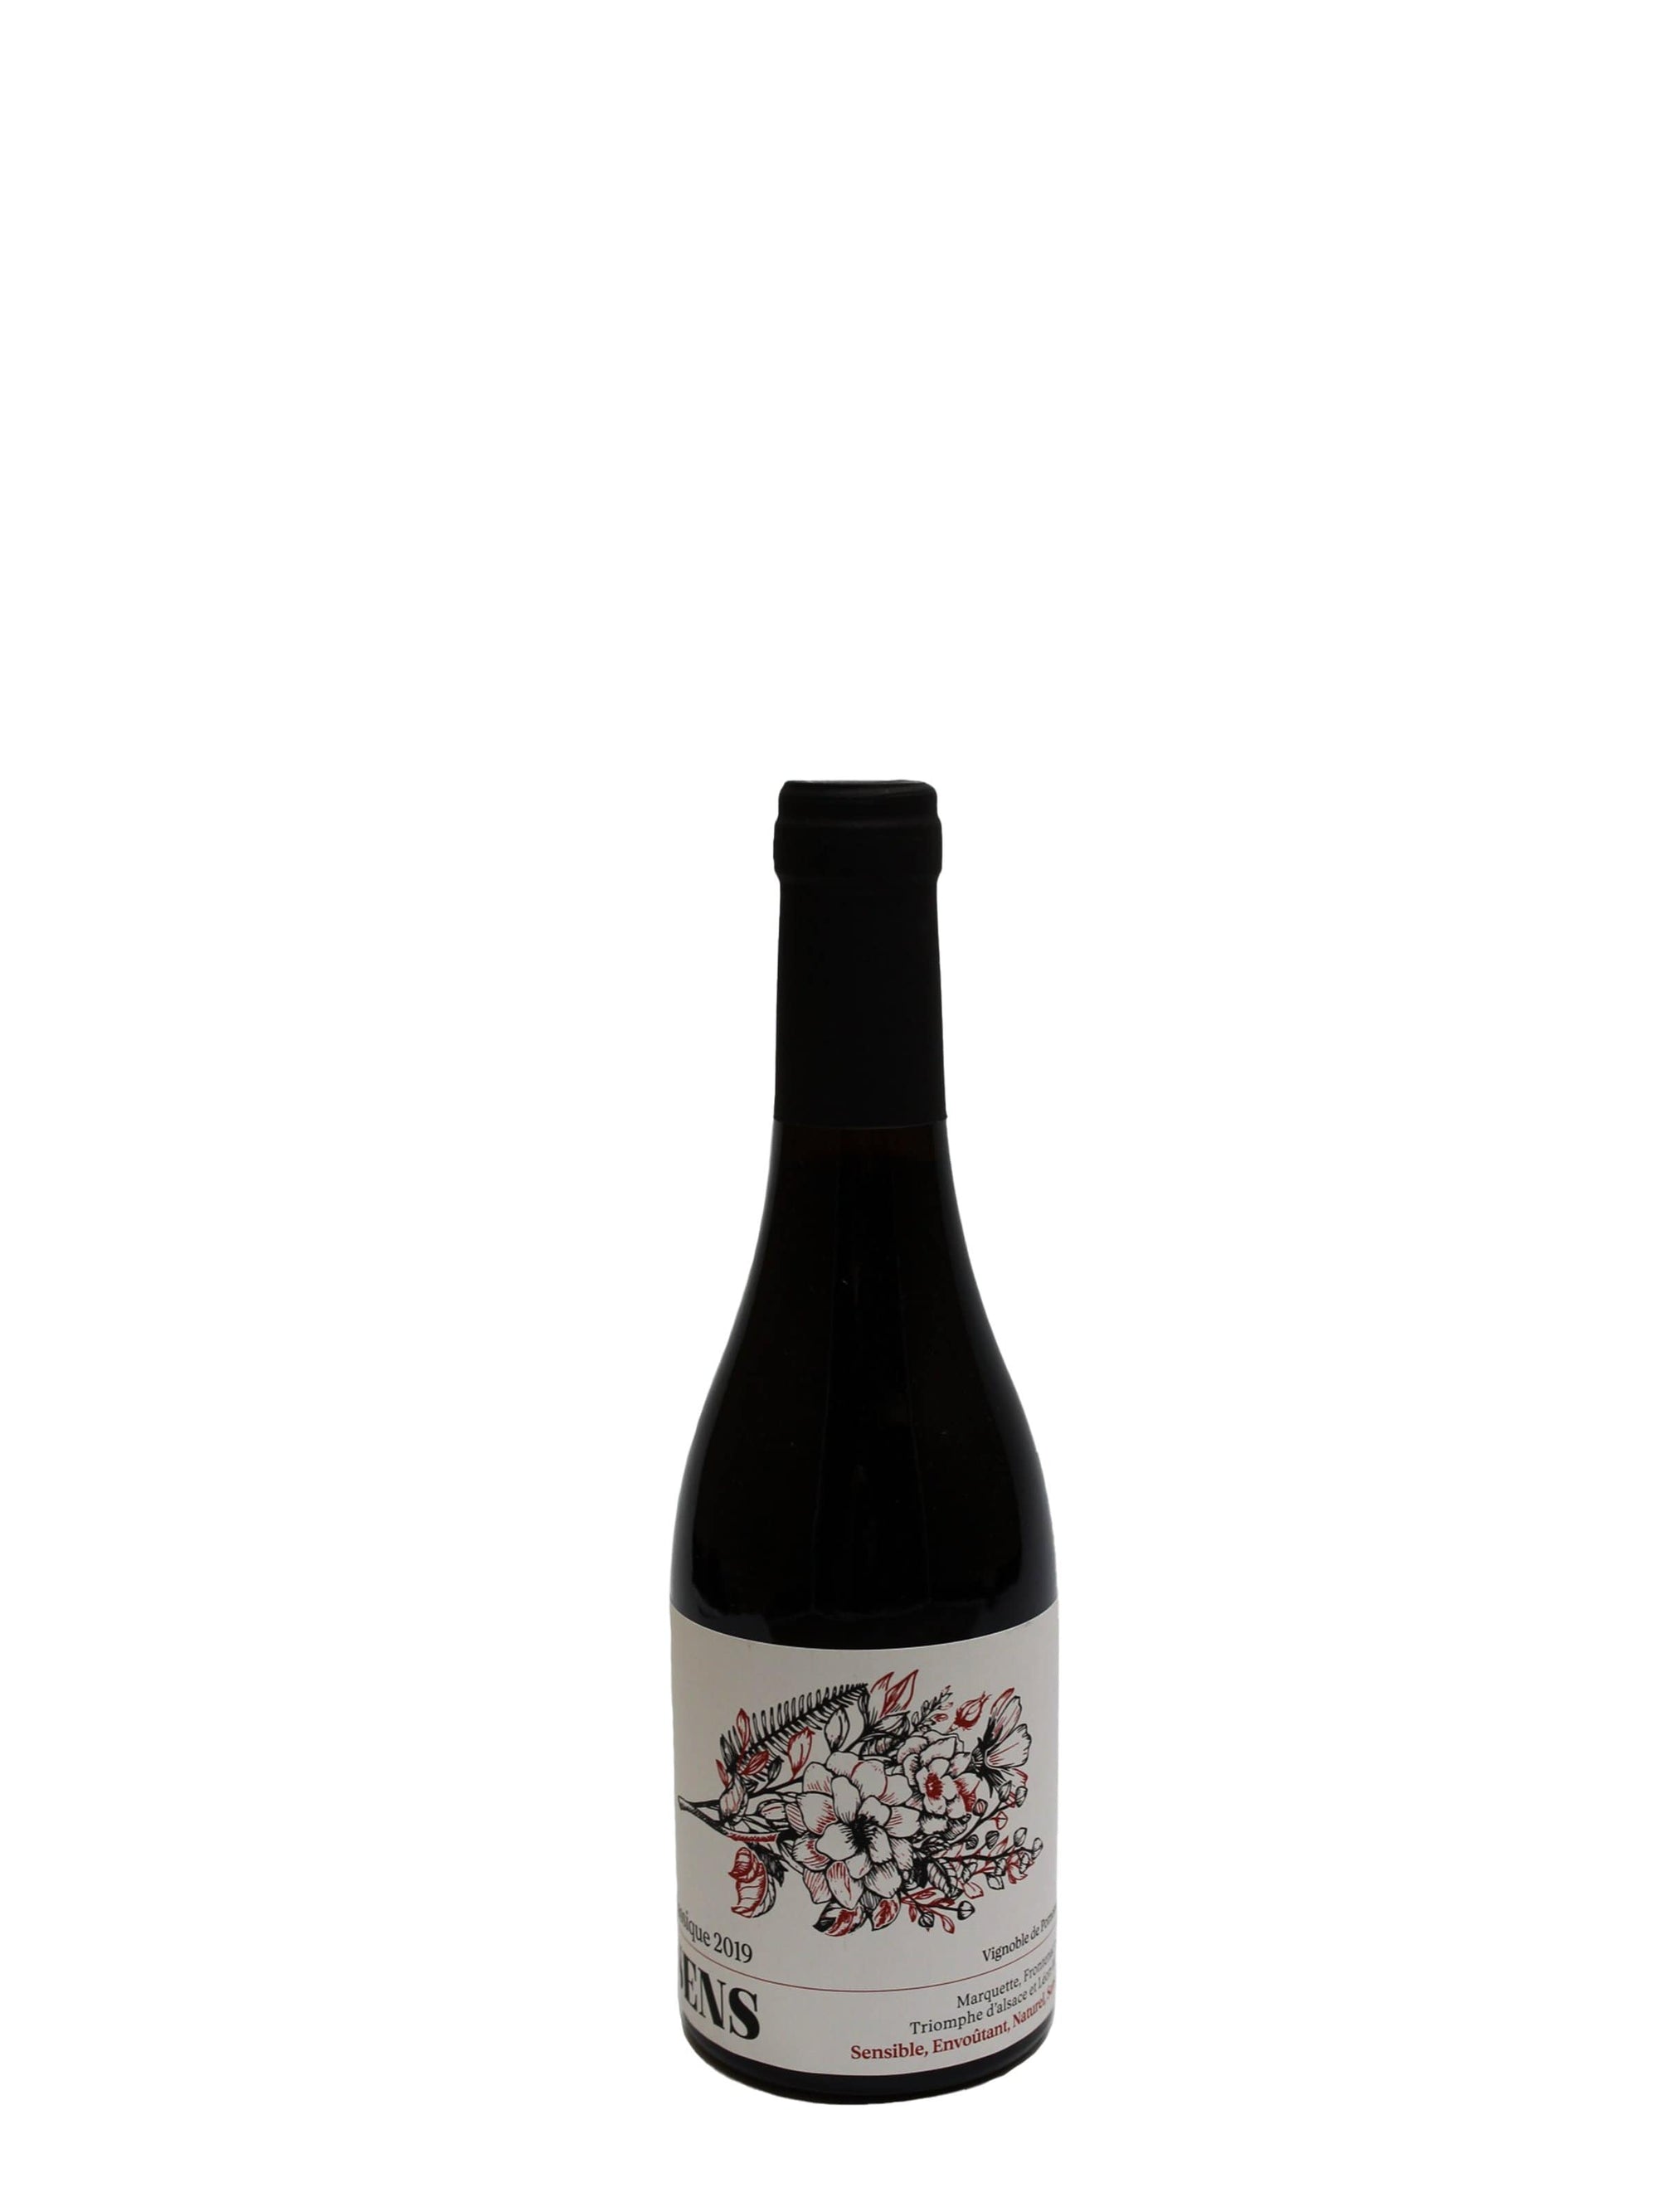 Vignoble de Pomone vin SENS Classique 375ml - Vin rouge du Vignoble de Pomone